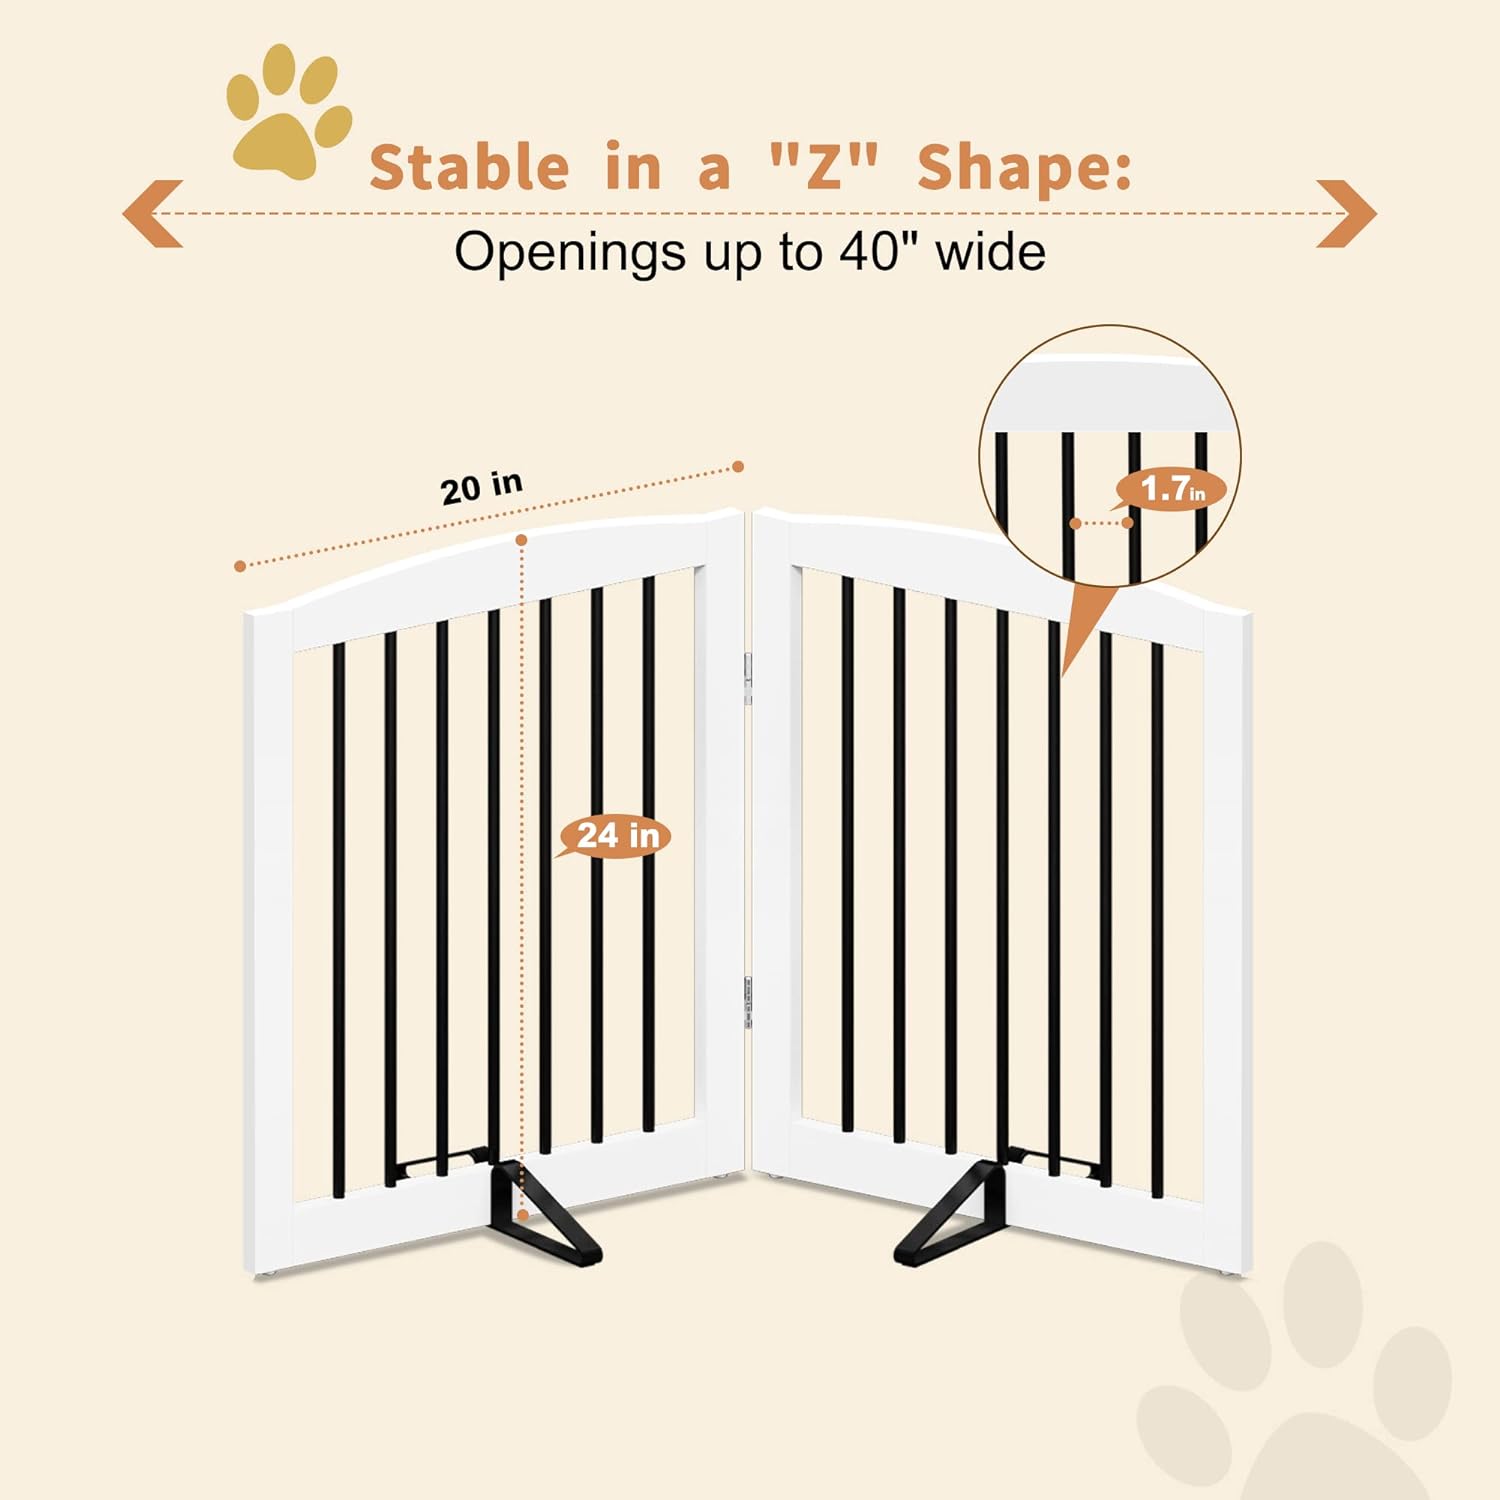 Puerta independiente para mascotas para perros, puerta plegable de madera para